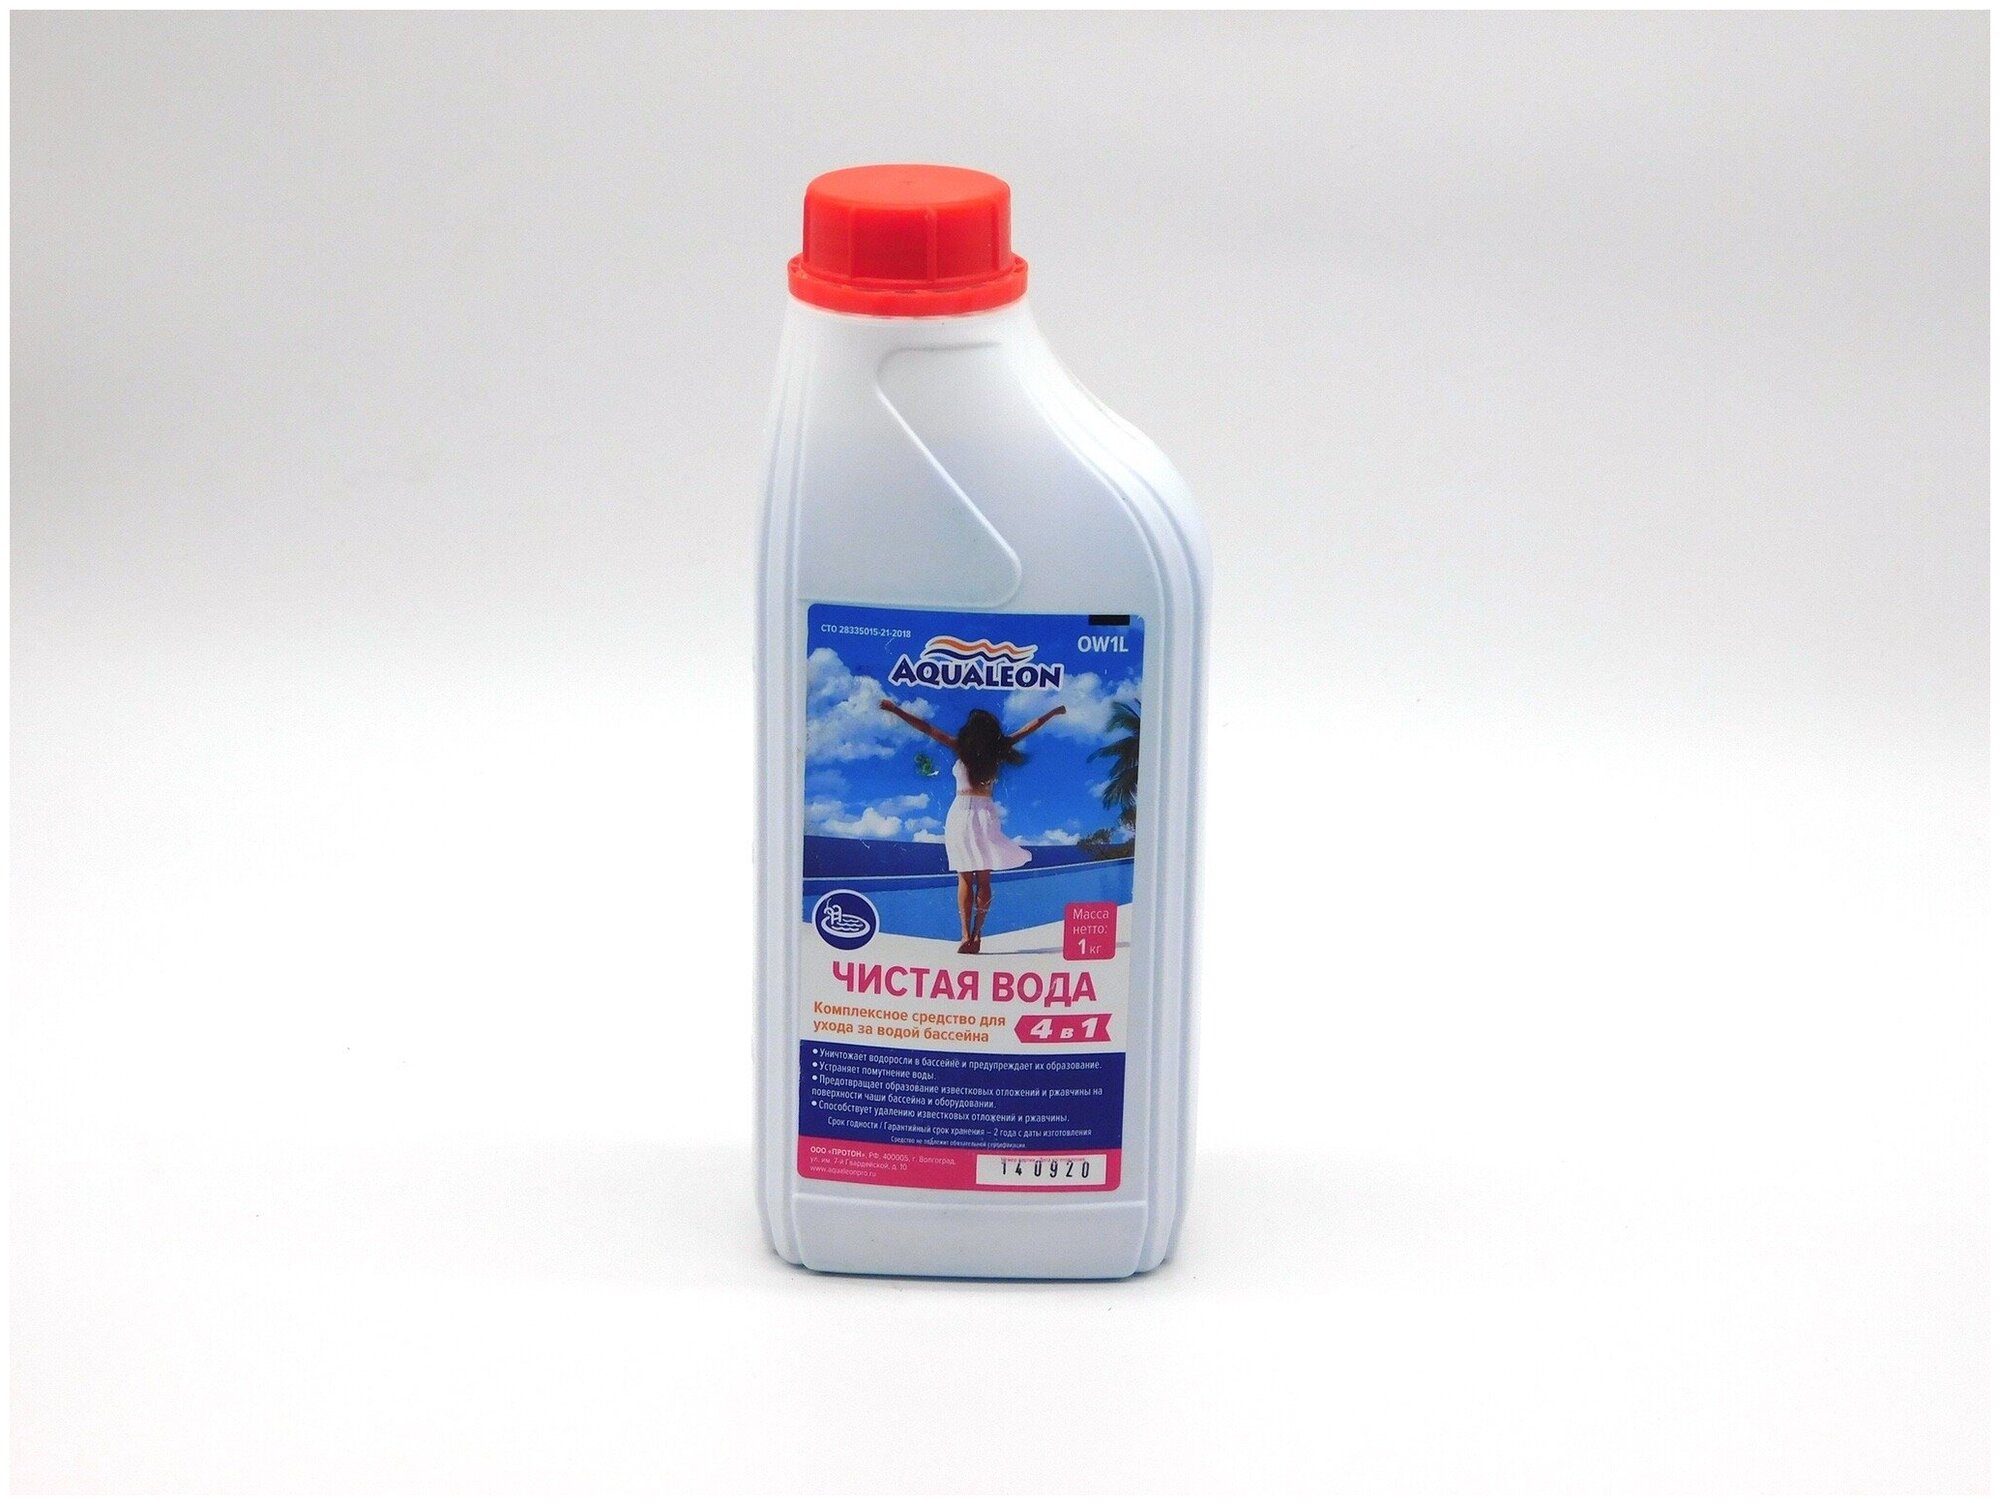 Aqualeon Чистая вода (средство 4 в 1) 1 кг 0019